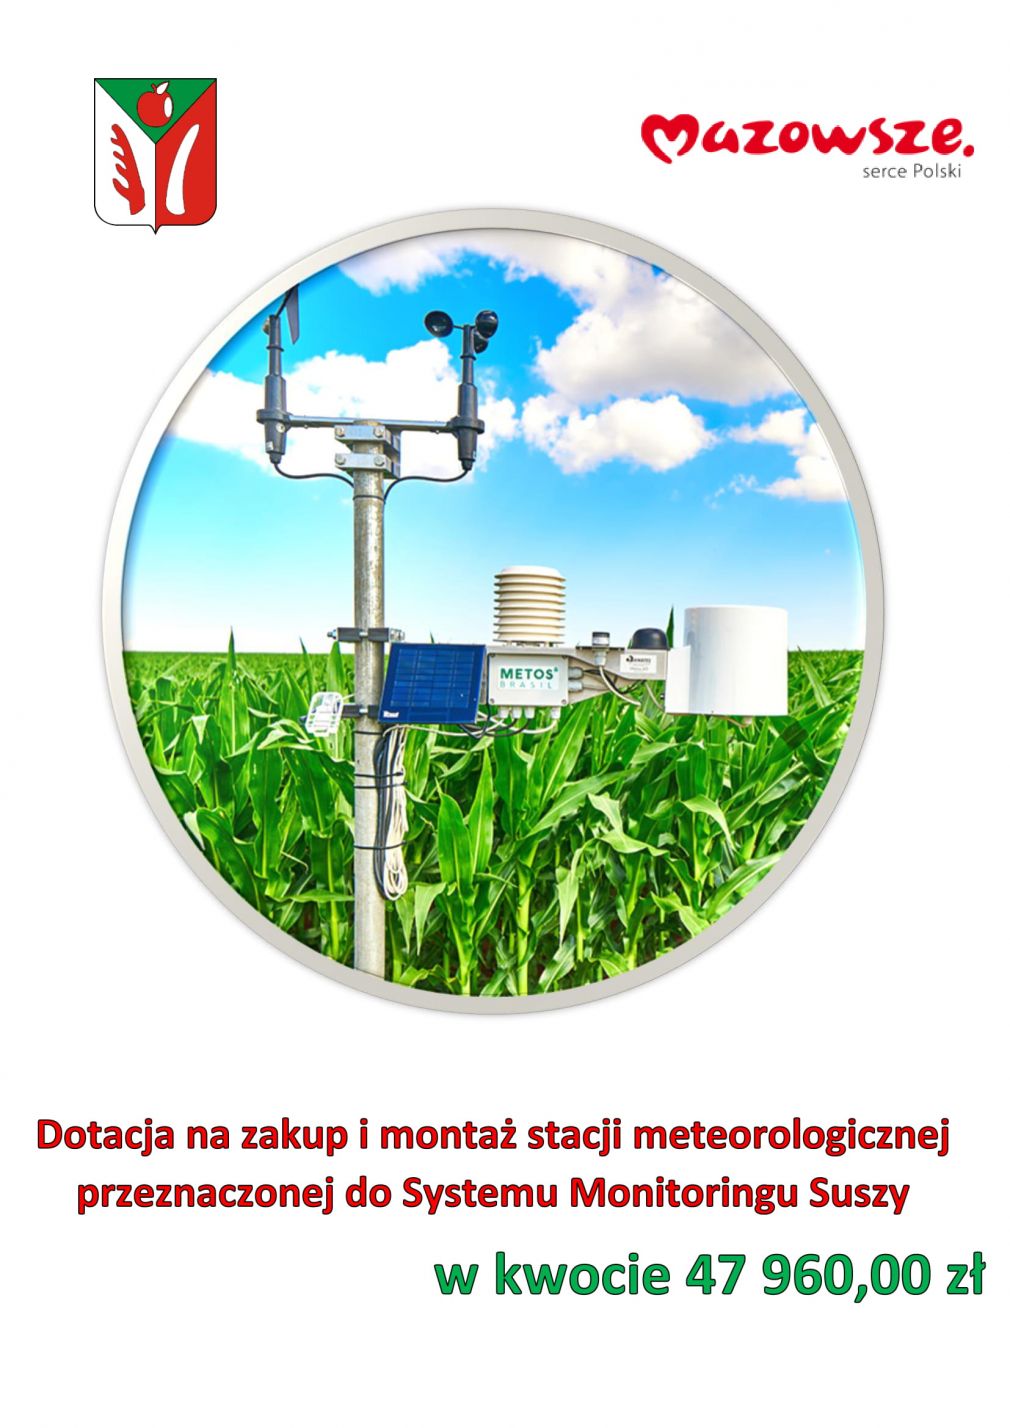 Monitoring suszy w gminie Chynów